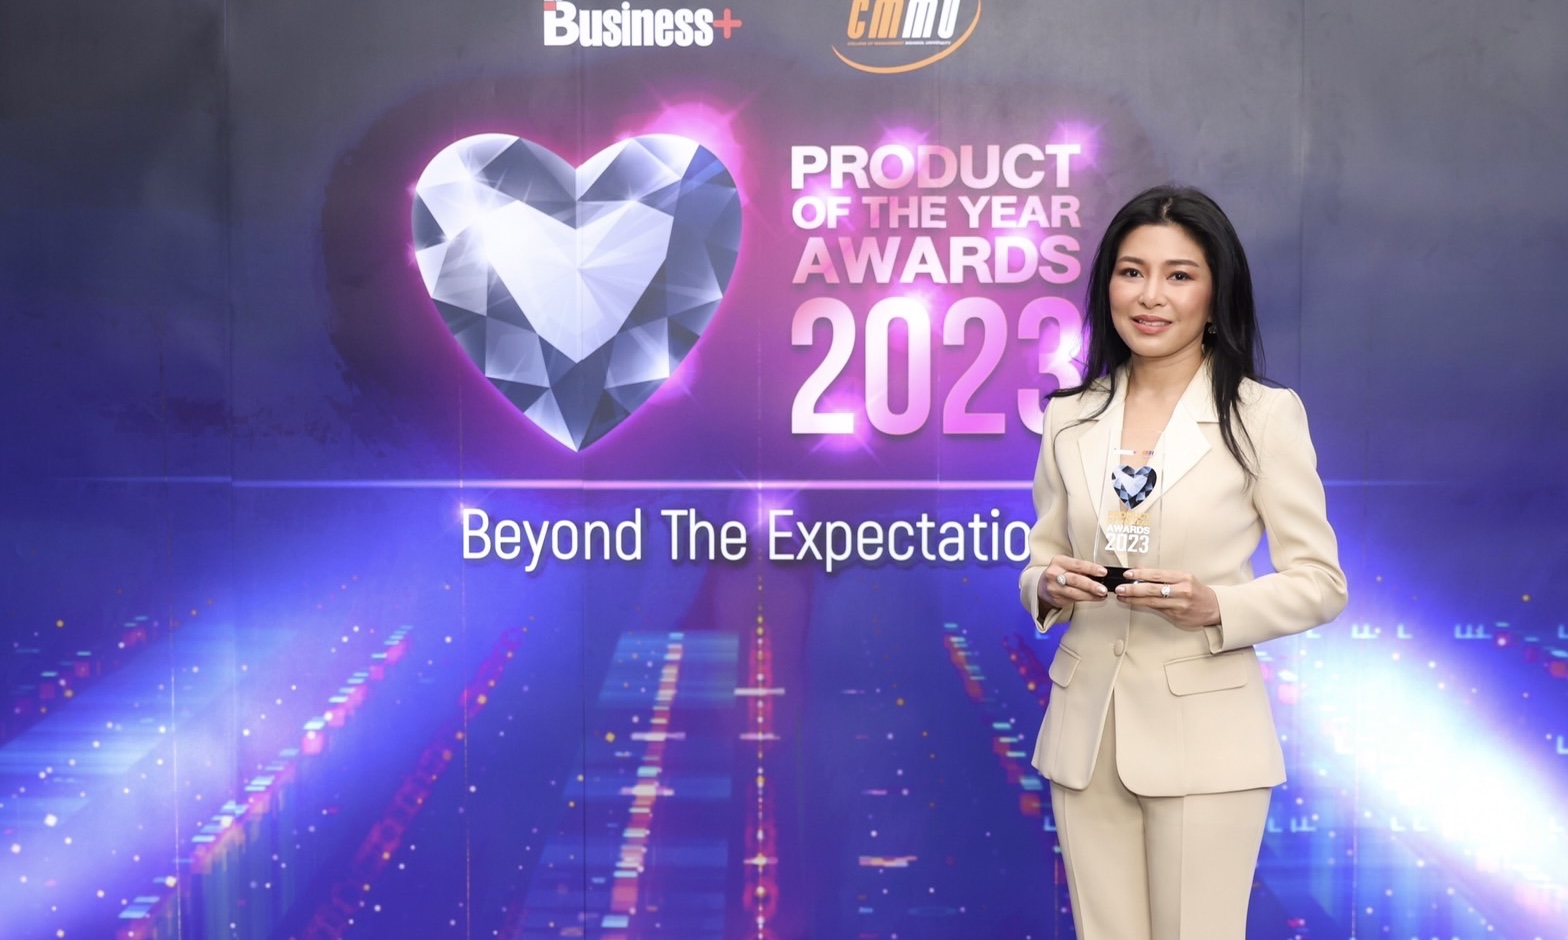 เอไอเอ ประเทศไทย คว้ารางวัล Business+ Product of the Year Awards 2023จากผลิตภัณฑ์ประกันชีวิต ‘AIA Vitality Unit Linked’ ที่ให้ครบทั้งเรื่องสุขภาพและการลงทุน